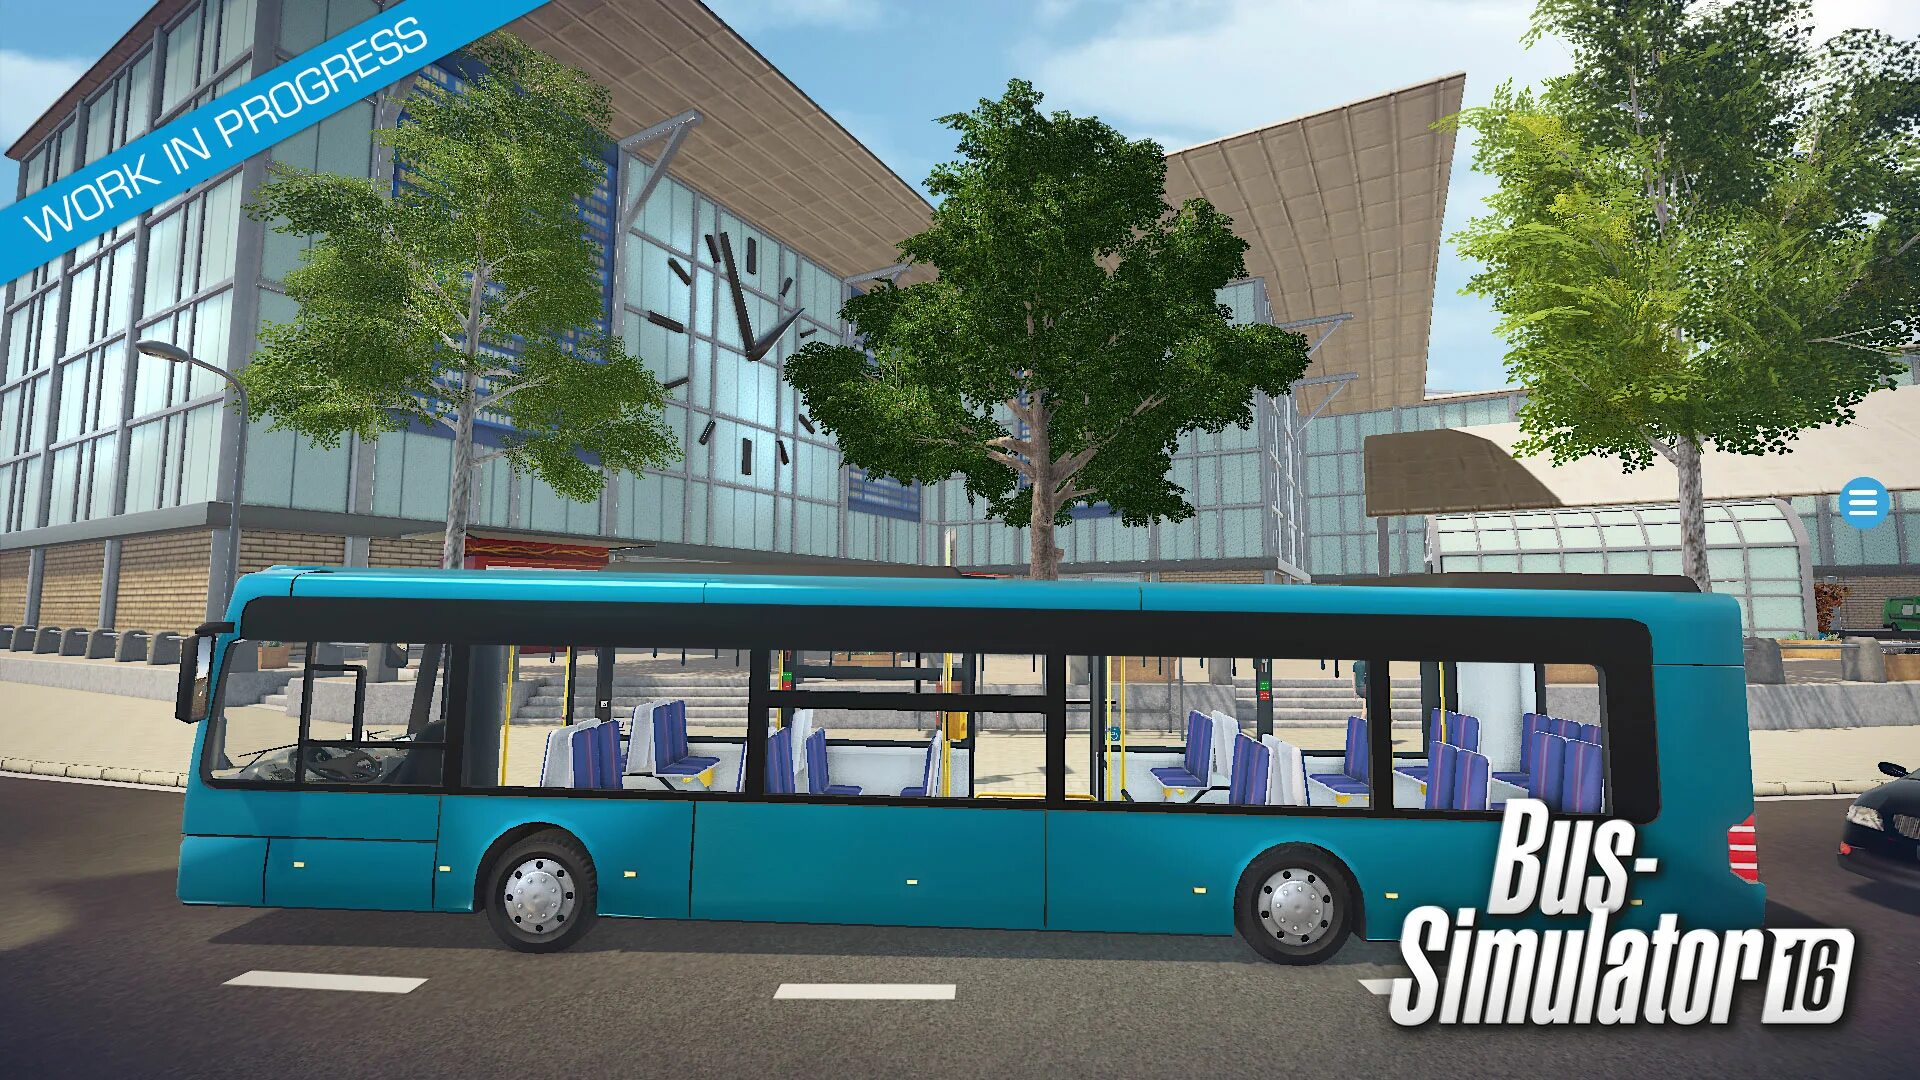 Bus Simulator. Bus Simulator автобусы. Симулятор автобуса 16. Игры про автобусы на ПК. Бус симулятор автобусы